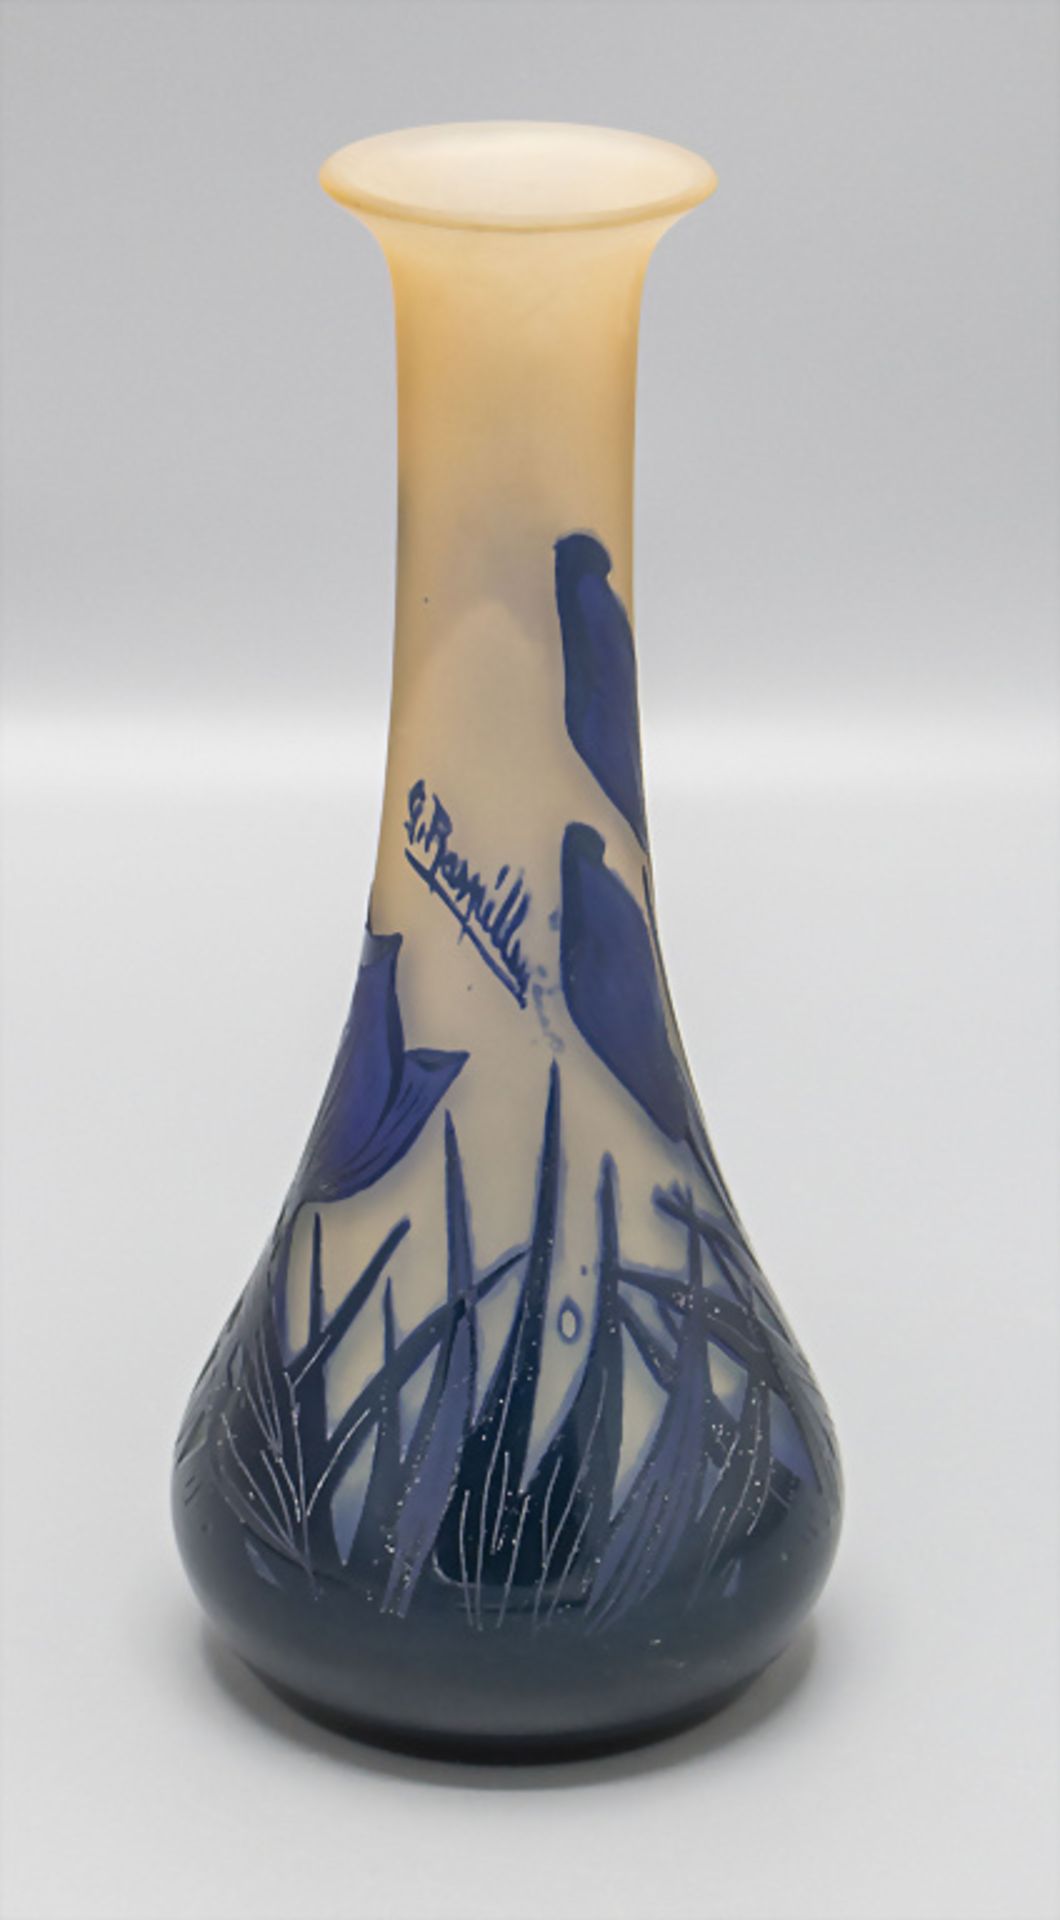 Jugendstil Vase 'Frühblüher' / An Art Noveau vase 'Early bloomers', Georges Raspiller, ... - Image 3 of 6